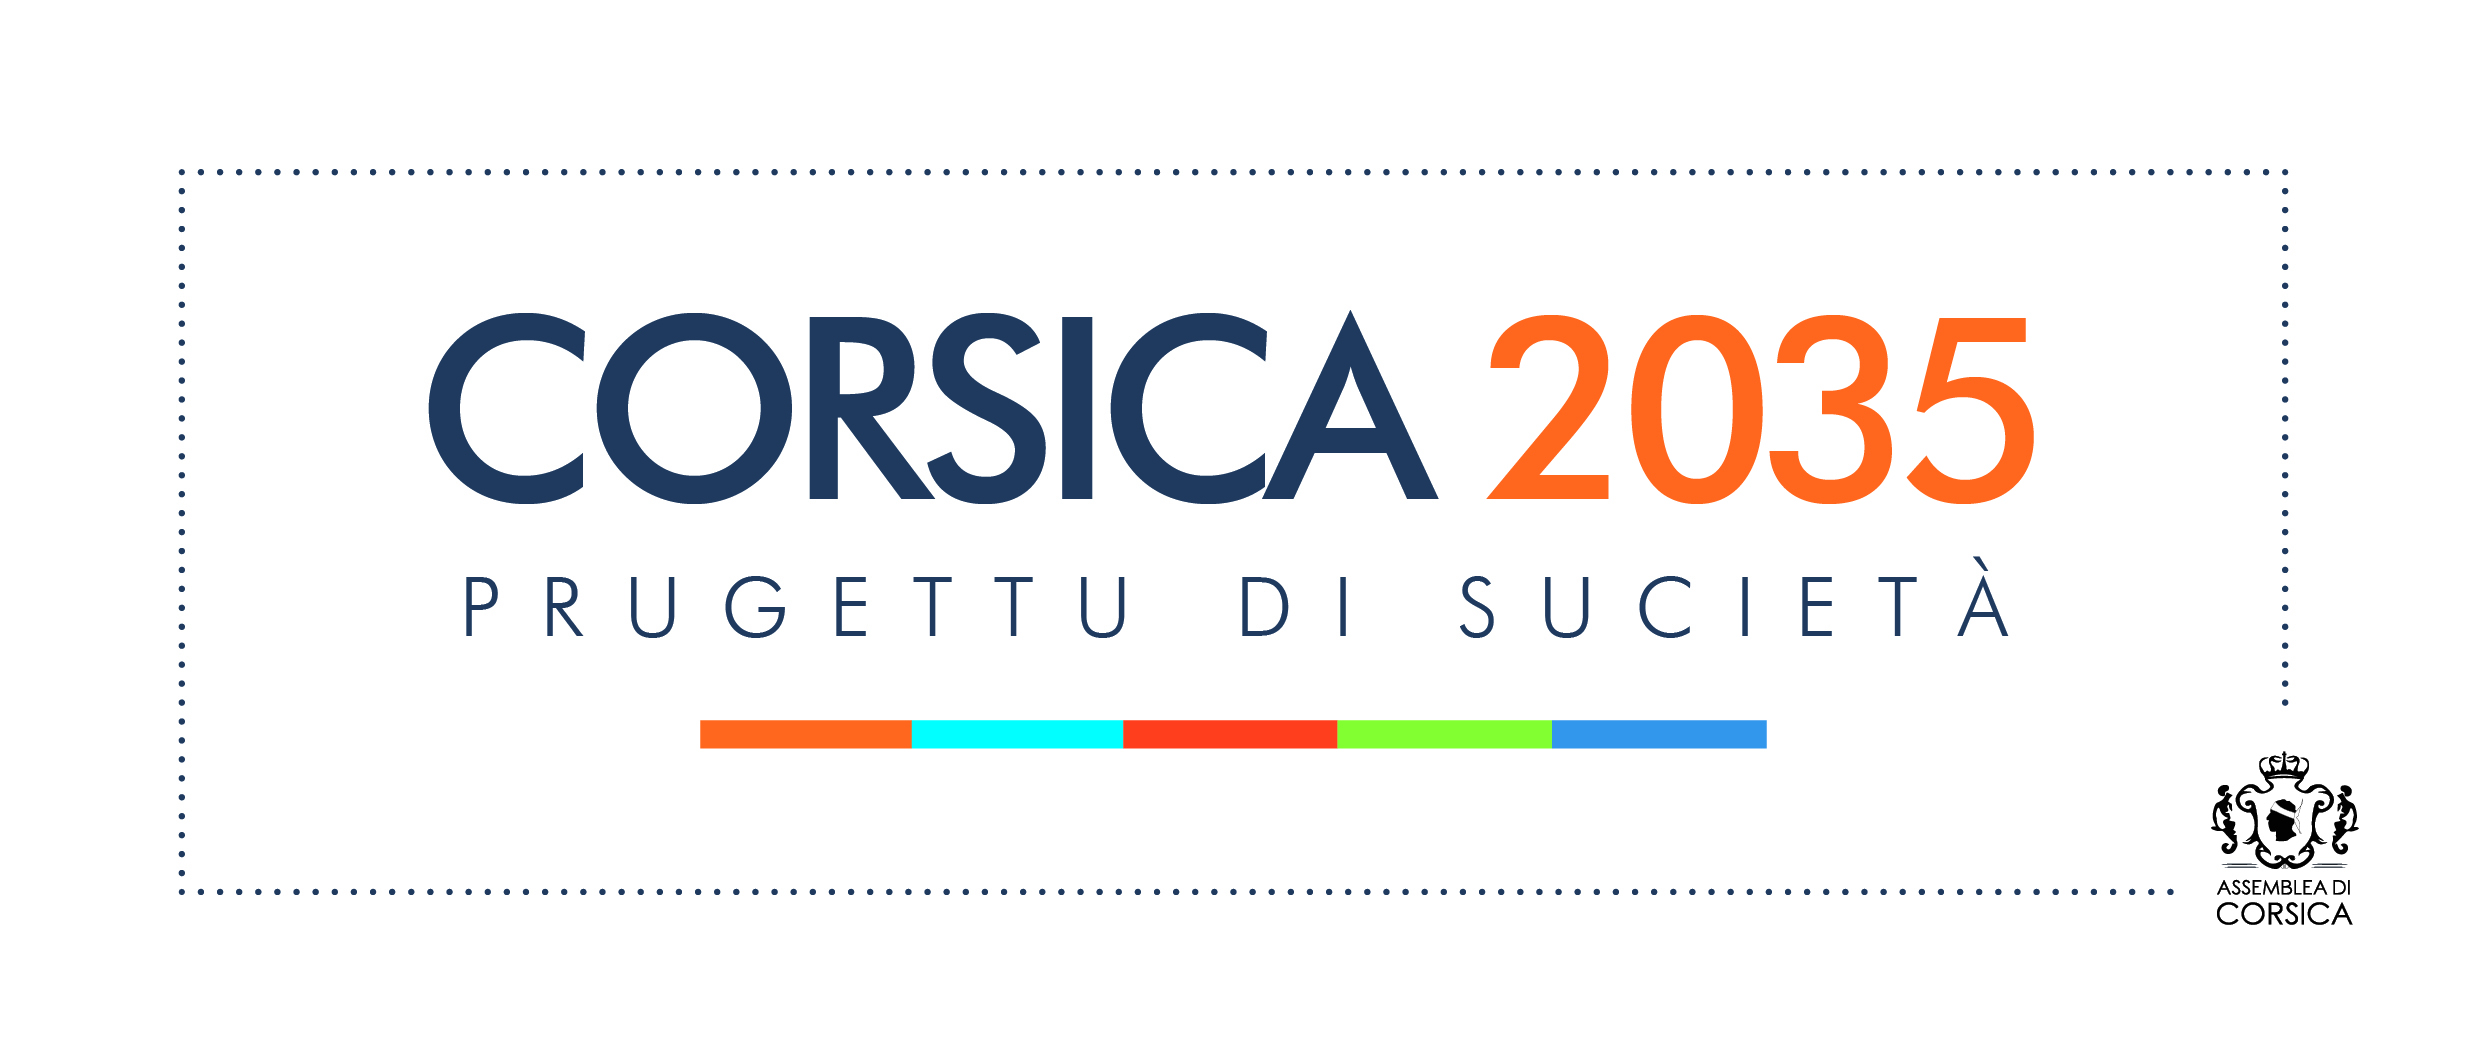 « Corsica 2035 » : Prugettu di sucietà